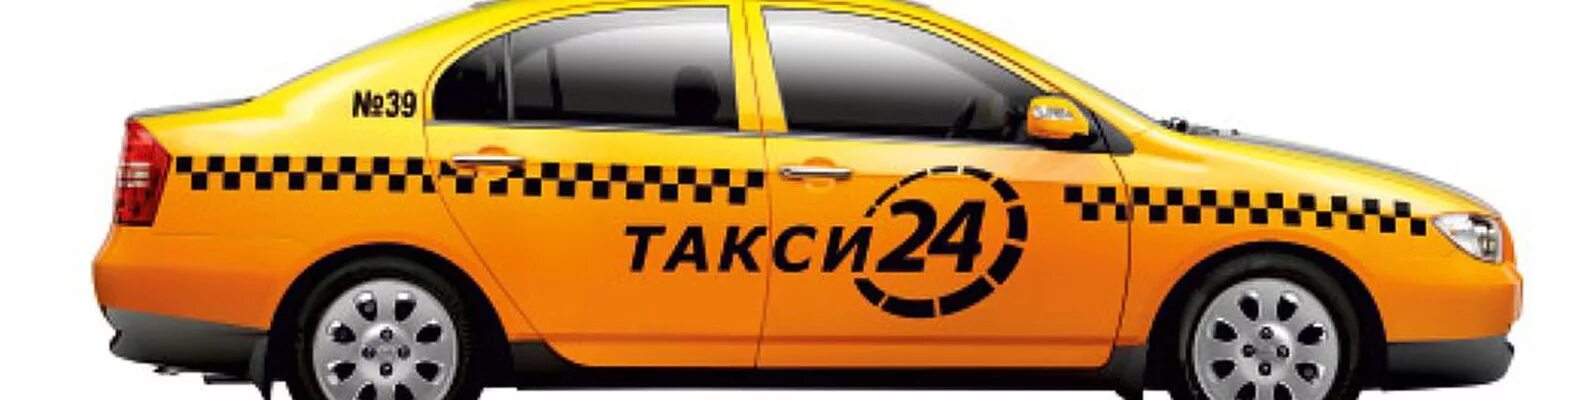 Такси ярково. Машина "такси". Такси картинки. Такси 24 24 24. Такси в городе.